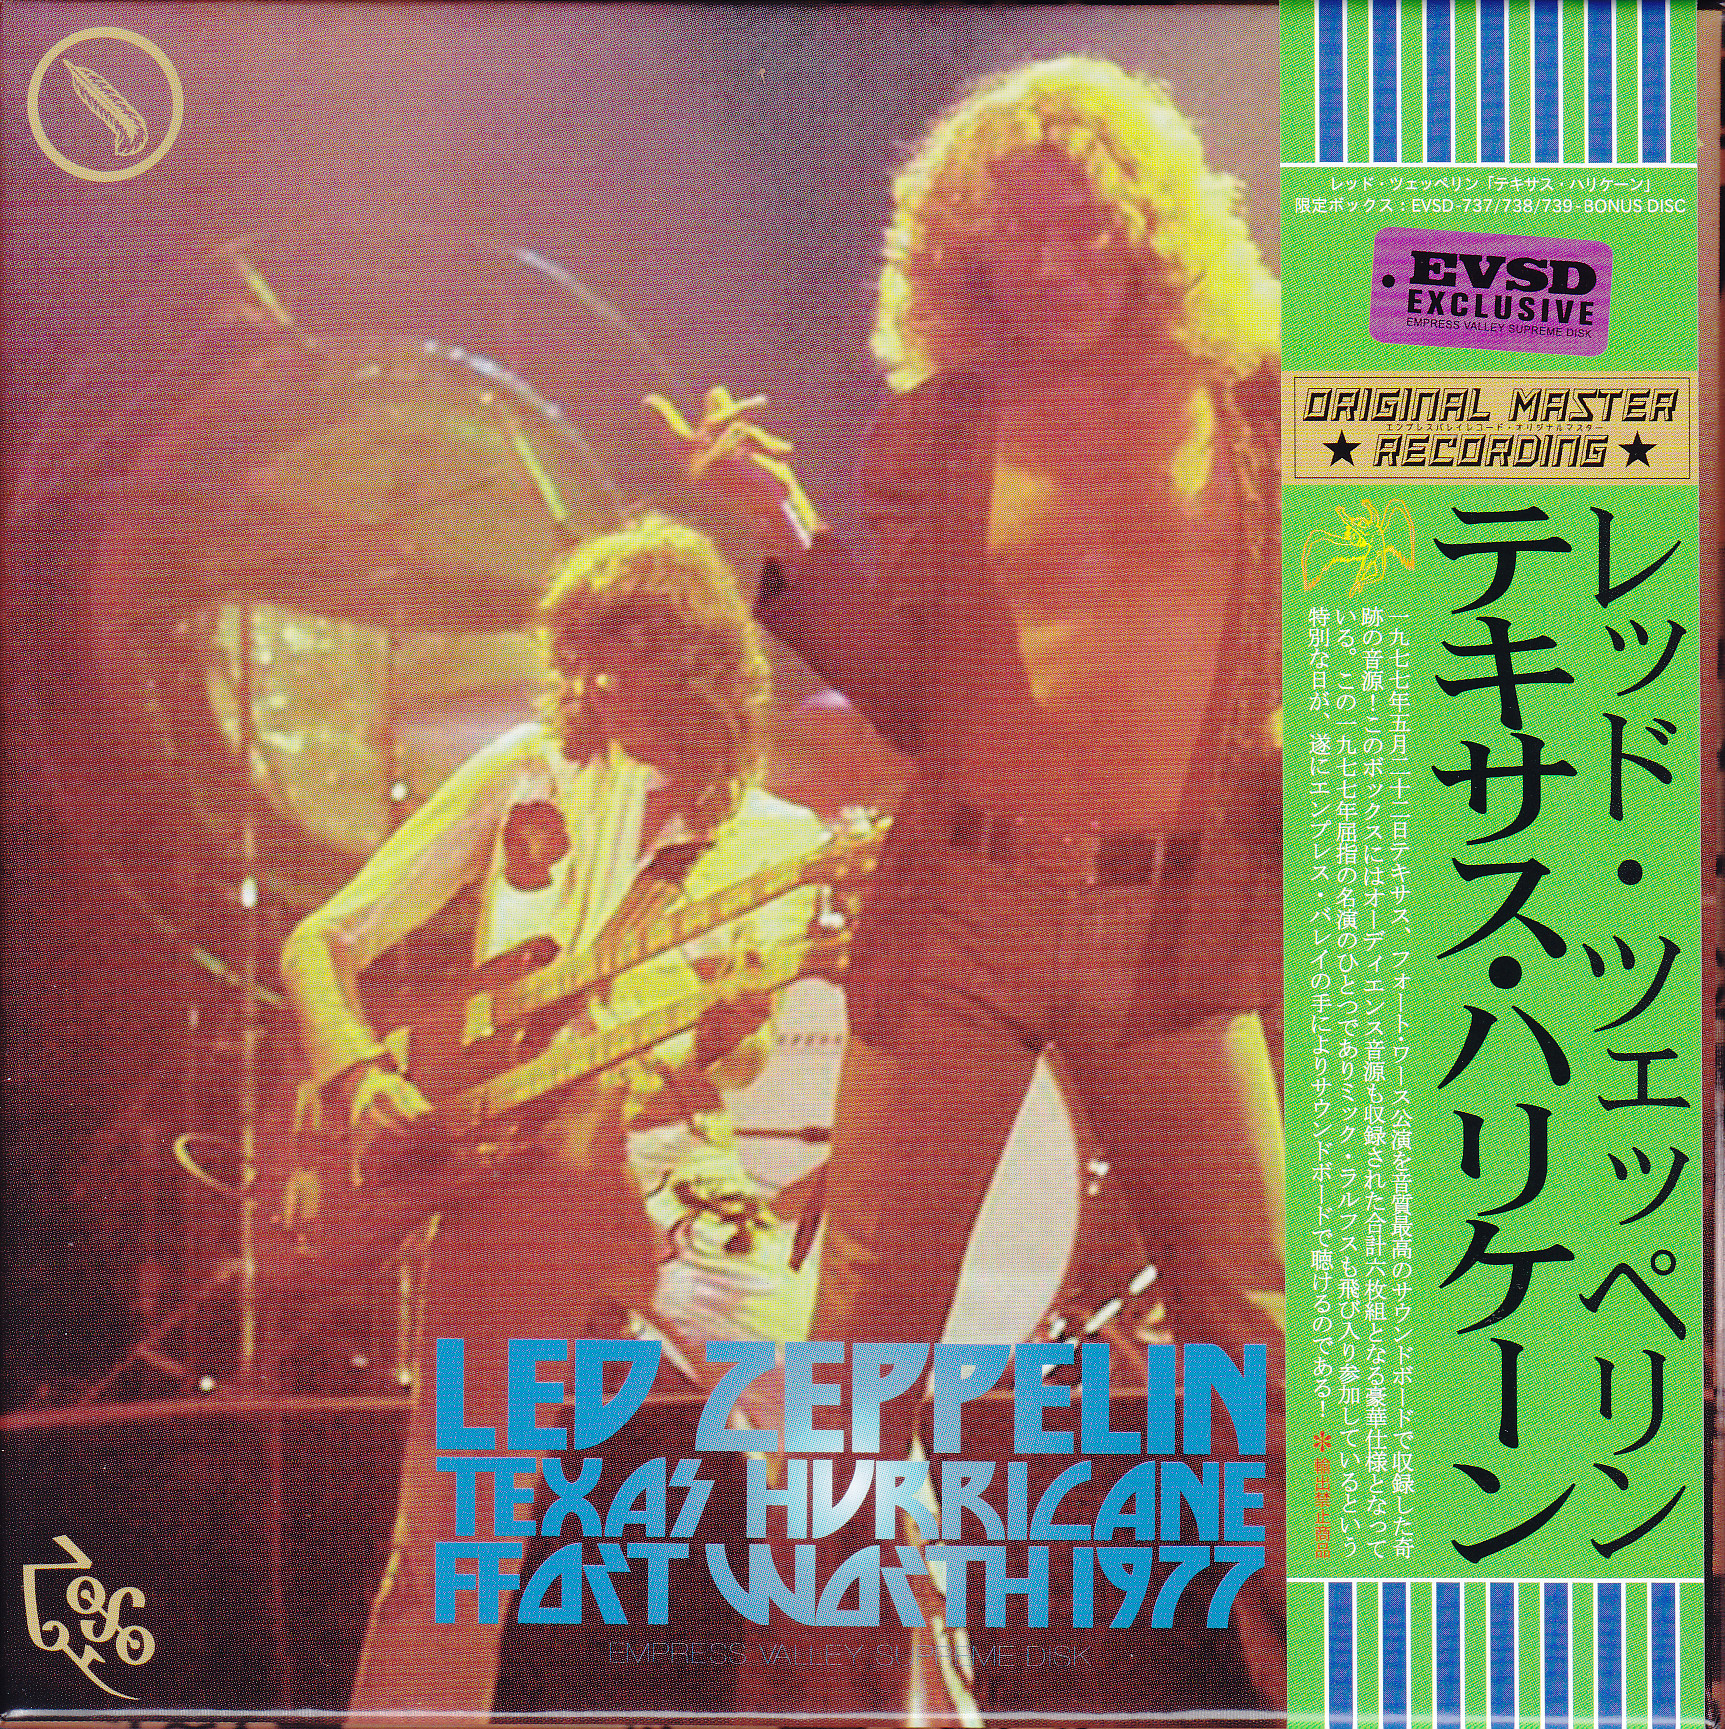 Led Zeppelin / Texas Hurricane Fort Worth 1977 /3CD+3Bonus CD Box 